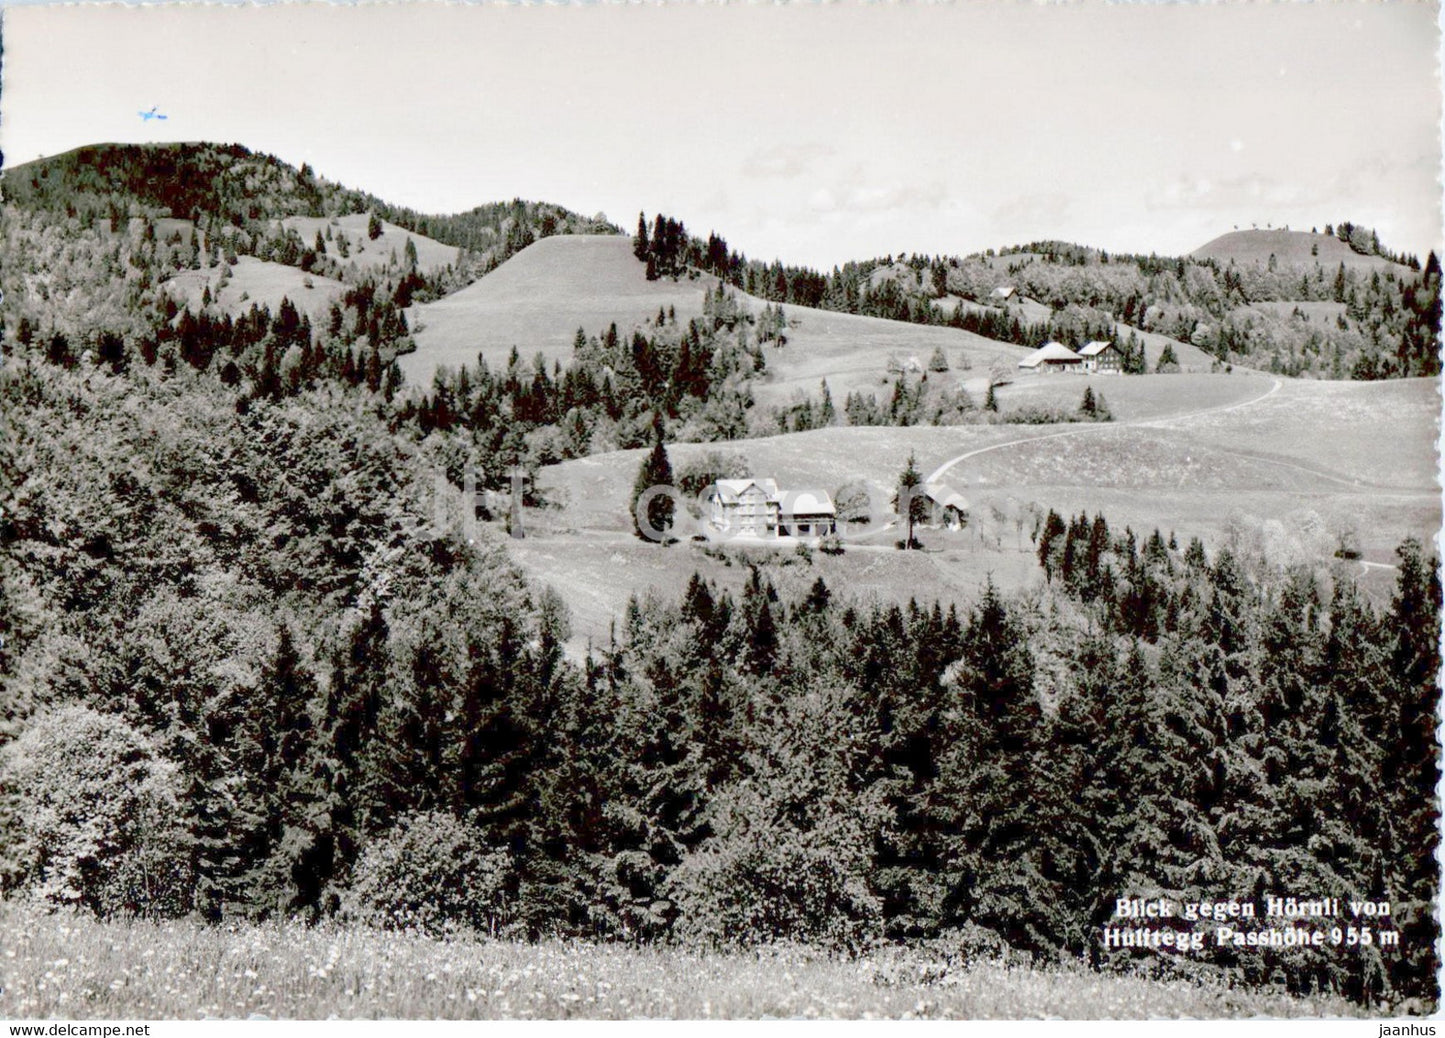 Blick gegen Hornli von Hulftegg Passhohe 955 m - old postcard - Switzerland - unused - JH Postcards